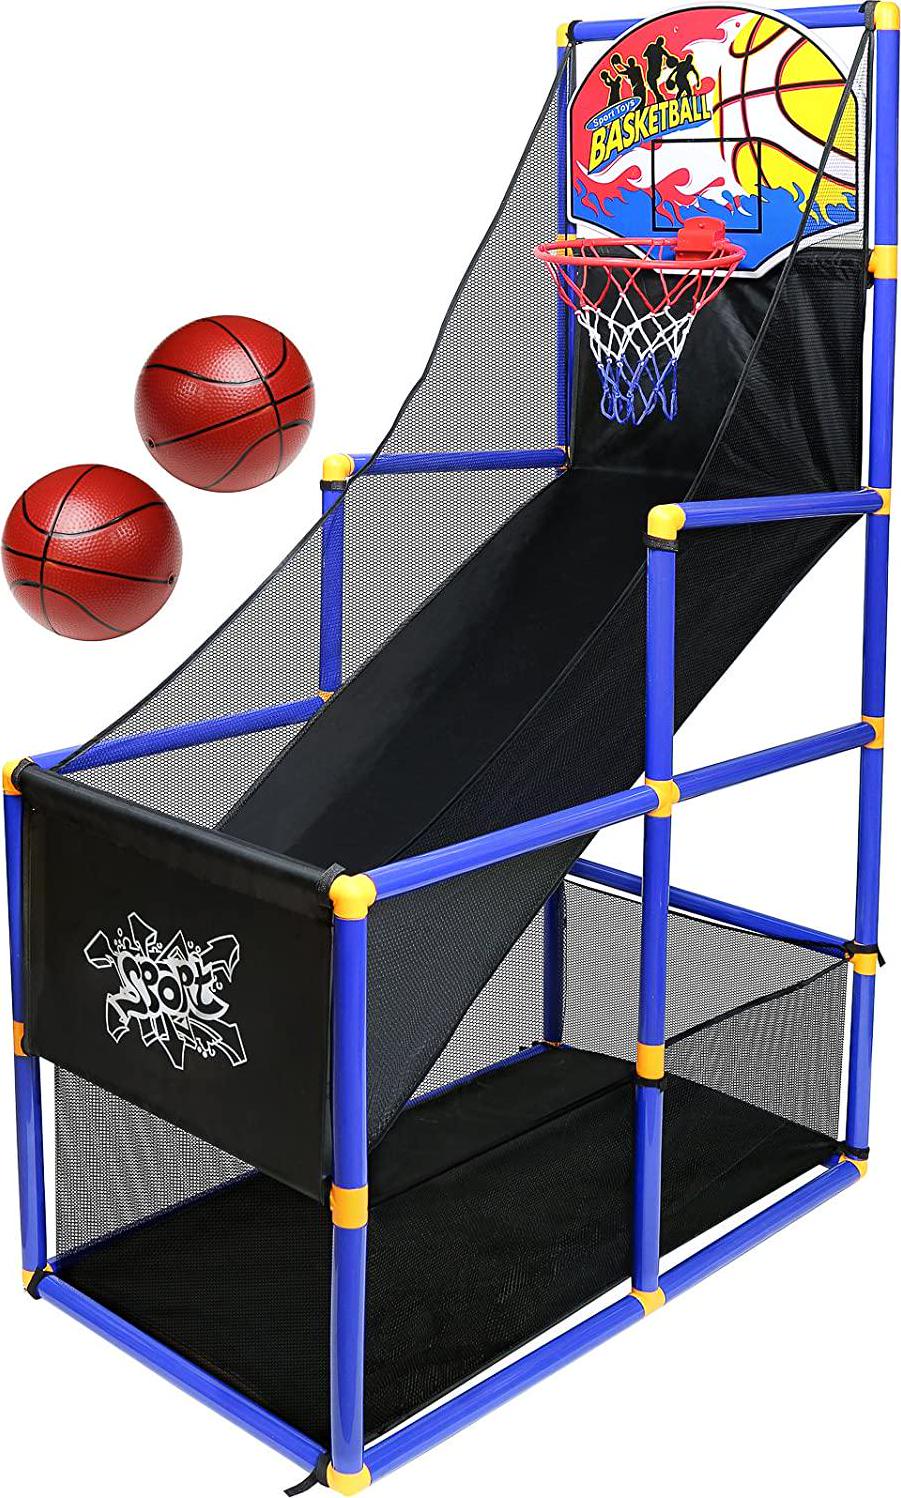 Kiddie Play, Kiddie Play Basketball Arcade Game for Kids